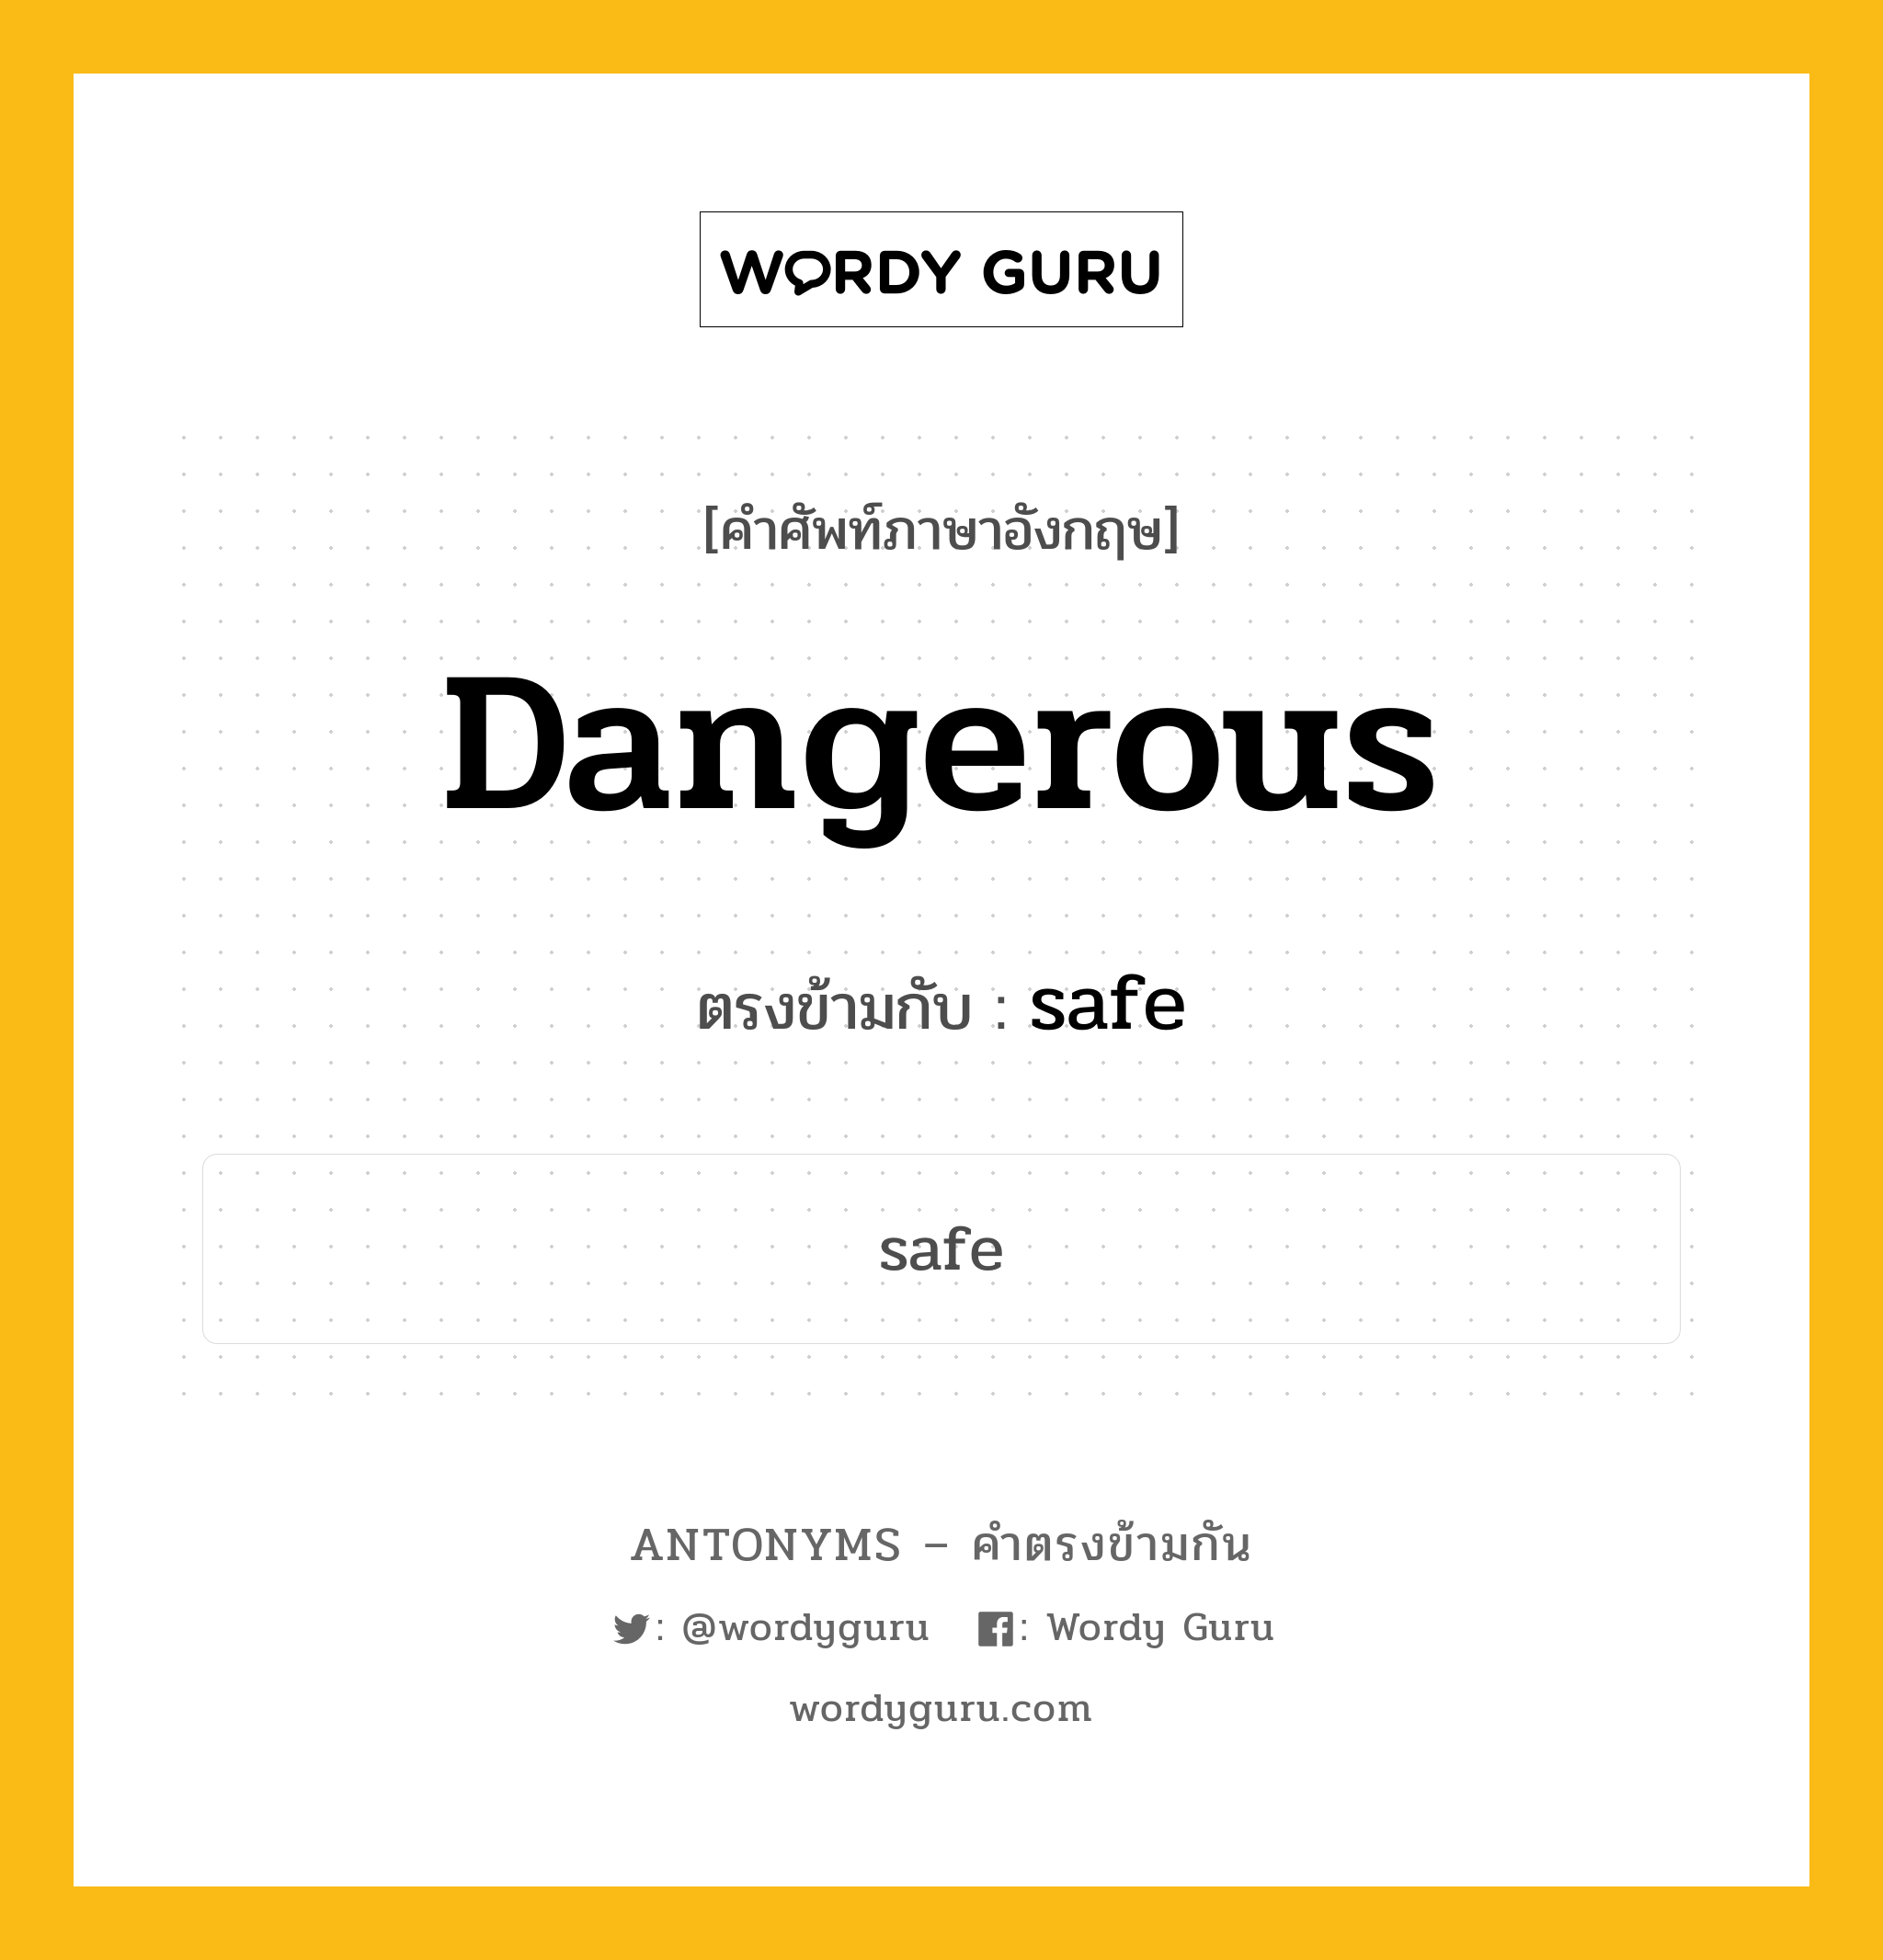 dangerous เป็นคำตรงข้ามกับคำไหนบ้าง?, คำศัพท์ภาษาอังกฤษ dangerous ตรงข้ามกับ safe หมวด safe